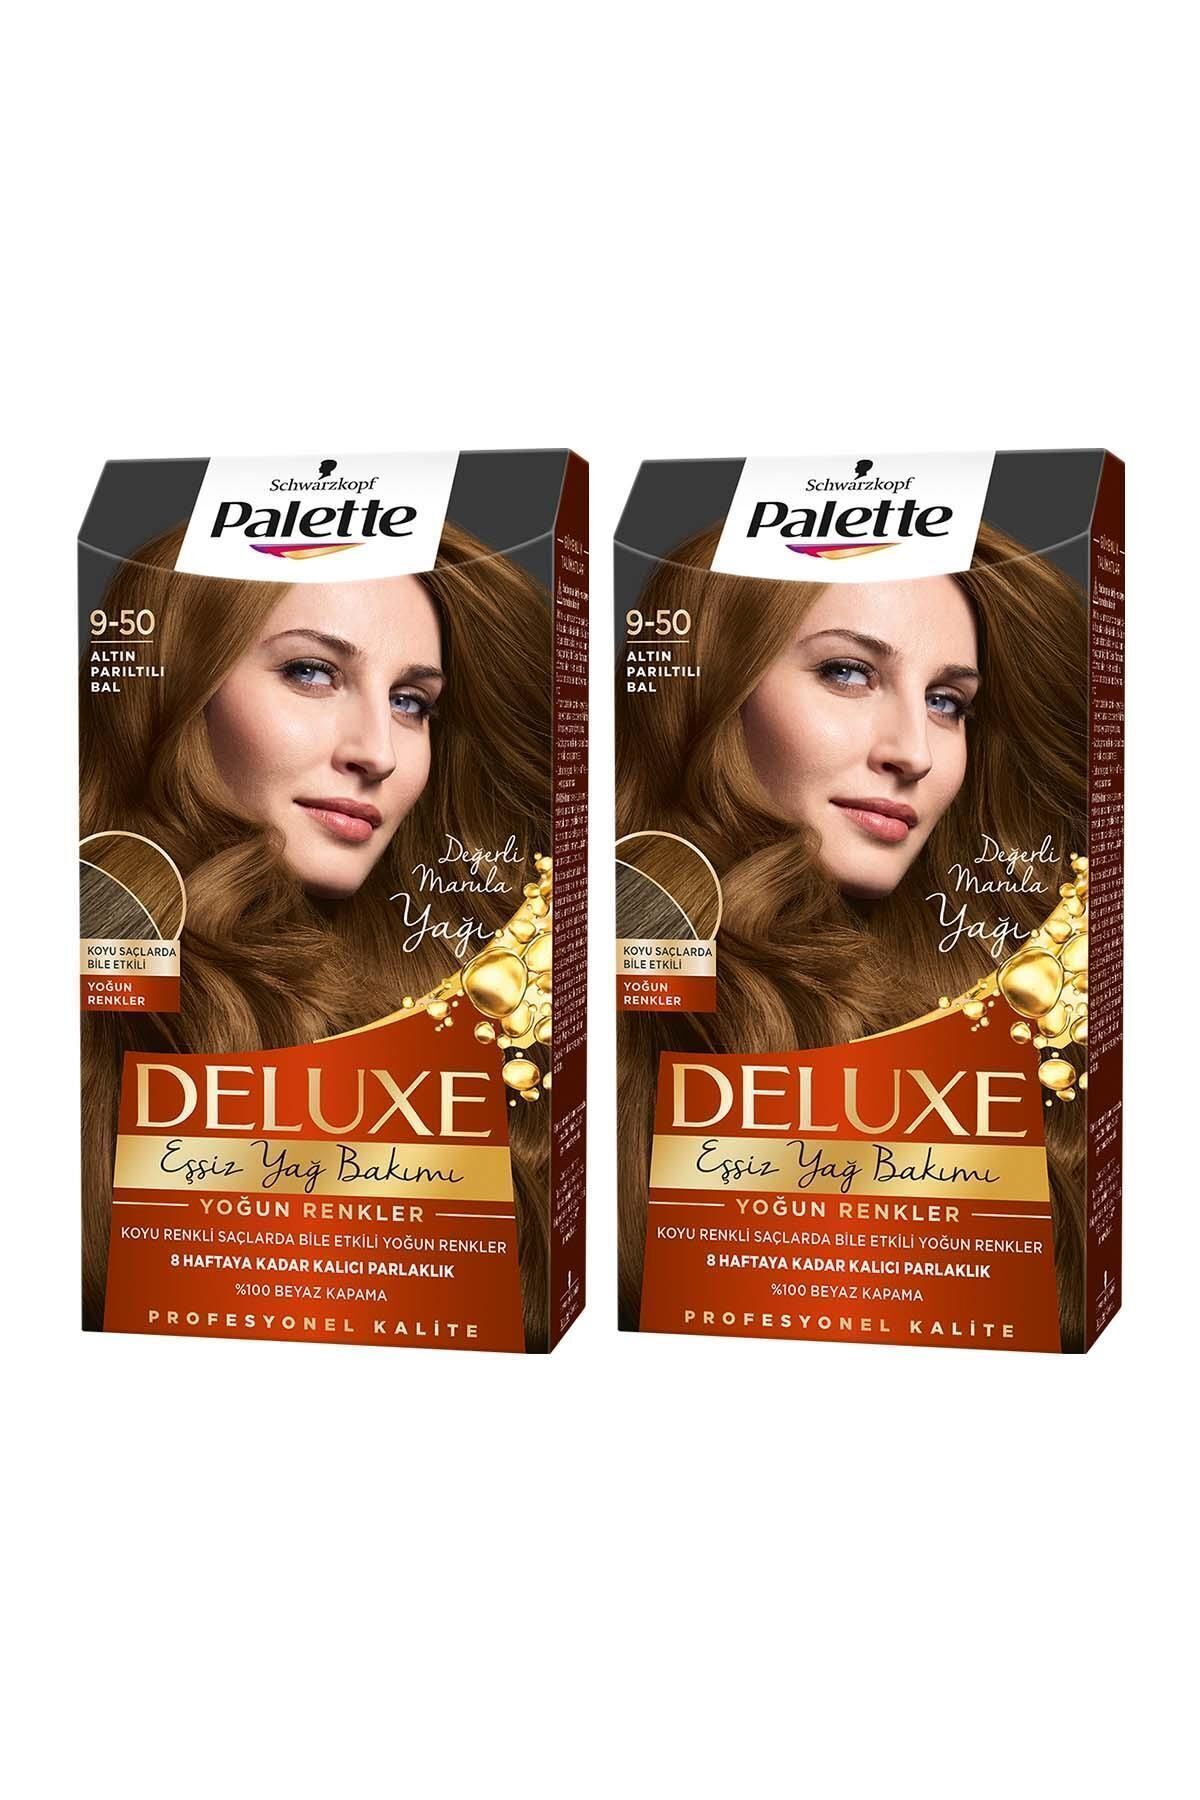 Palette Deluxe Yoğun Renkler 9-50 Altın Parıltılı Bal X 2 Adet Saç Boyası